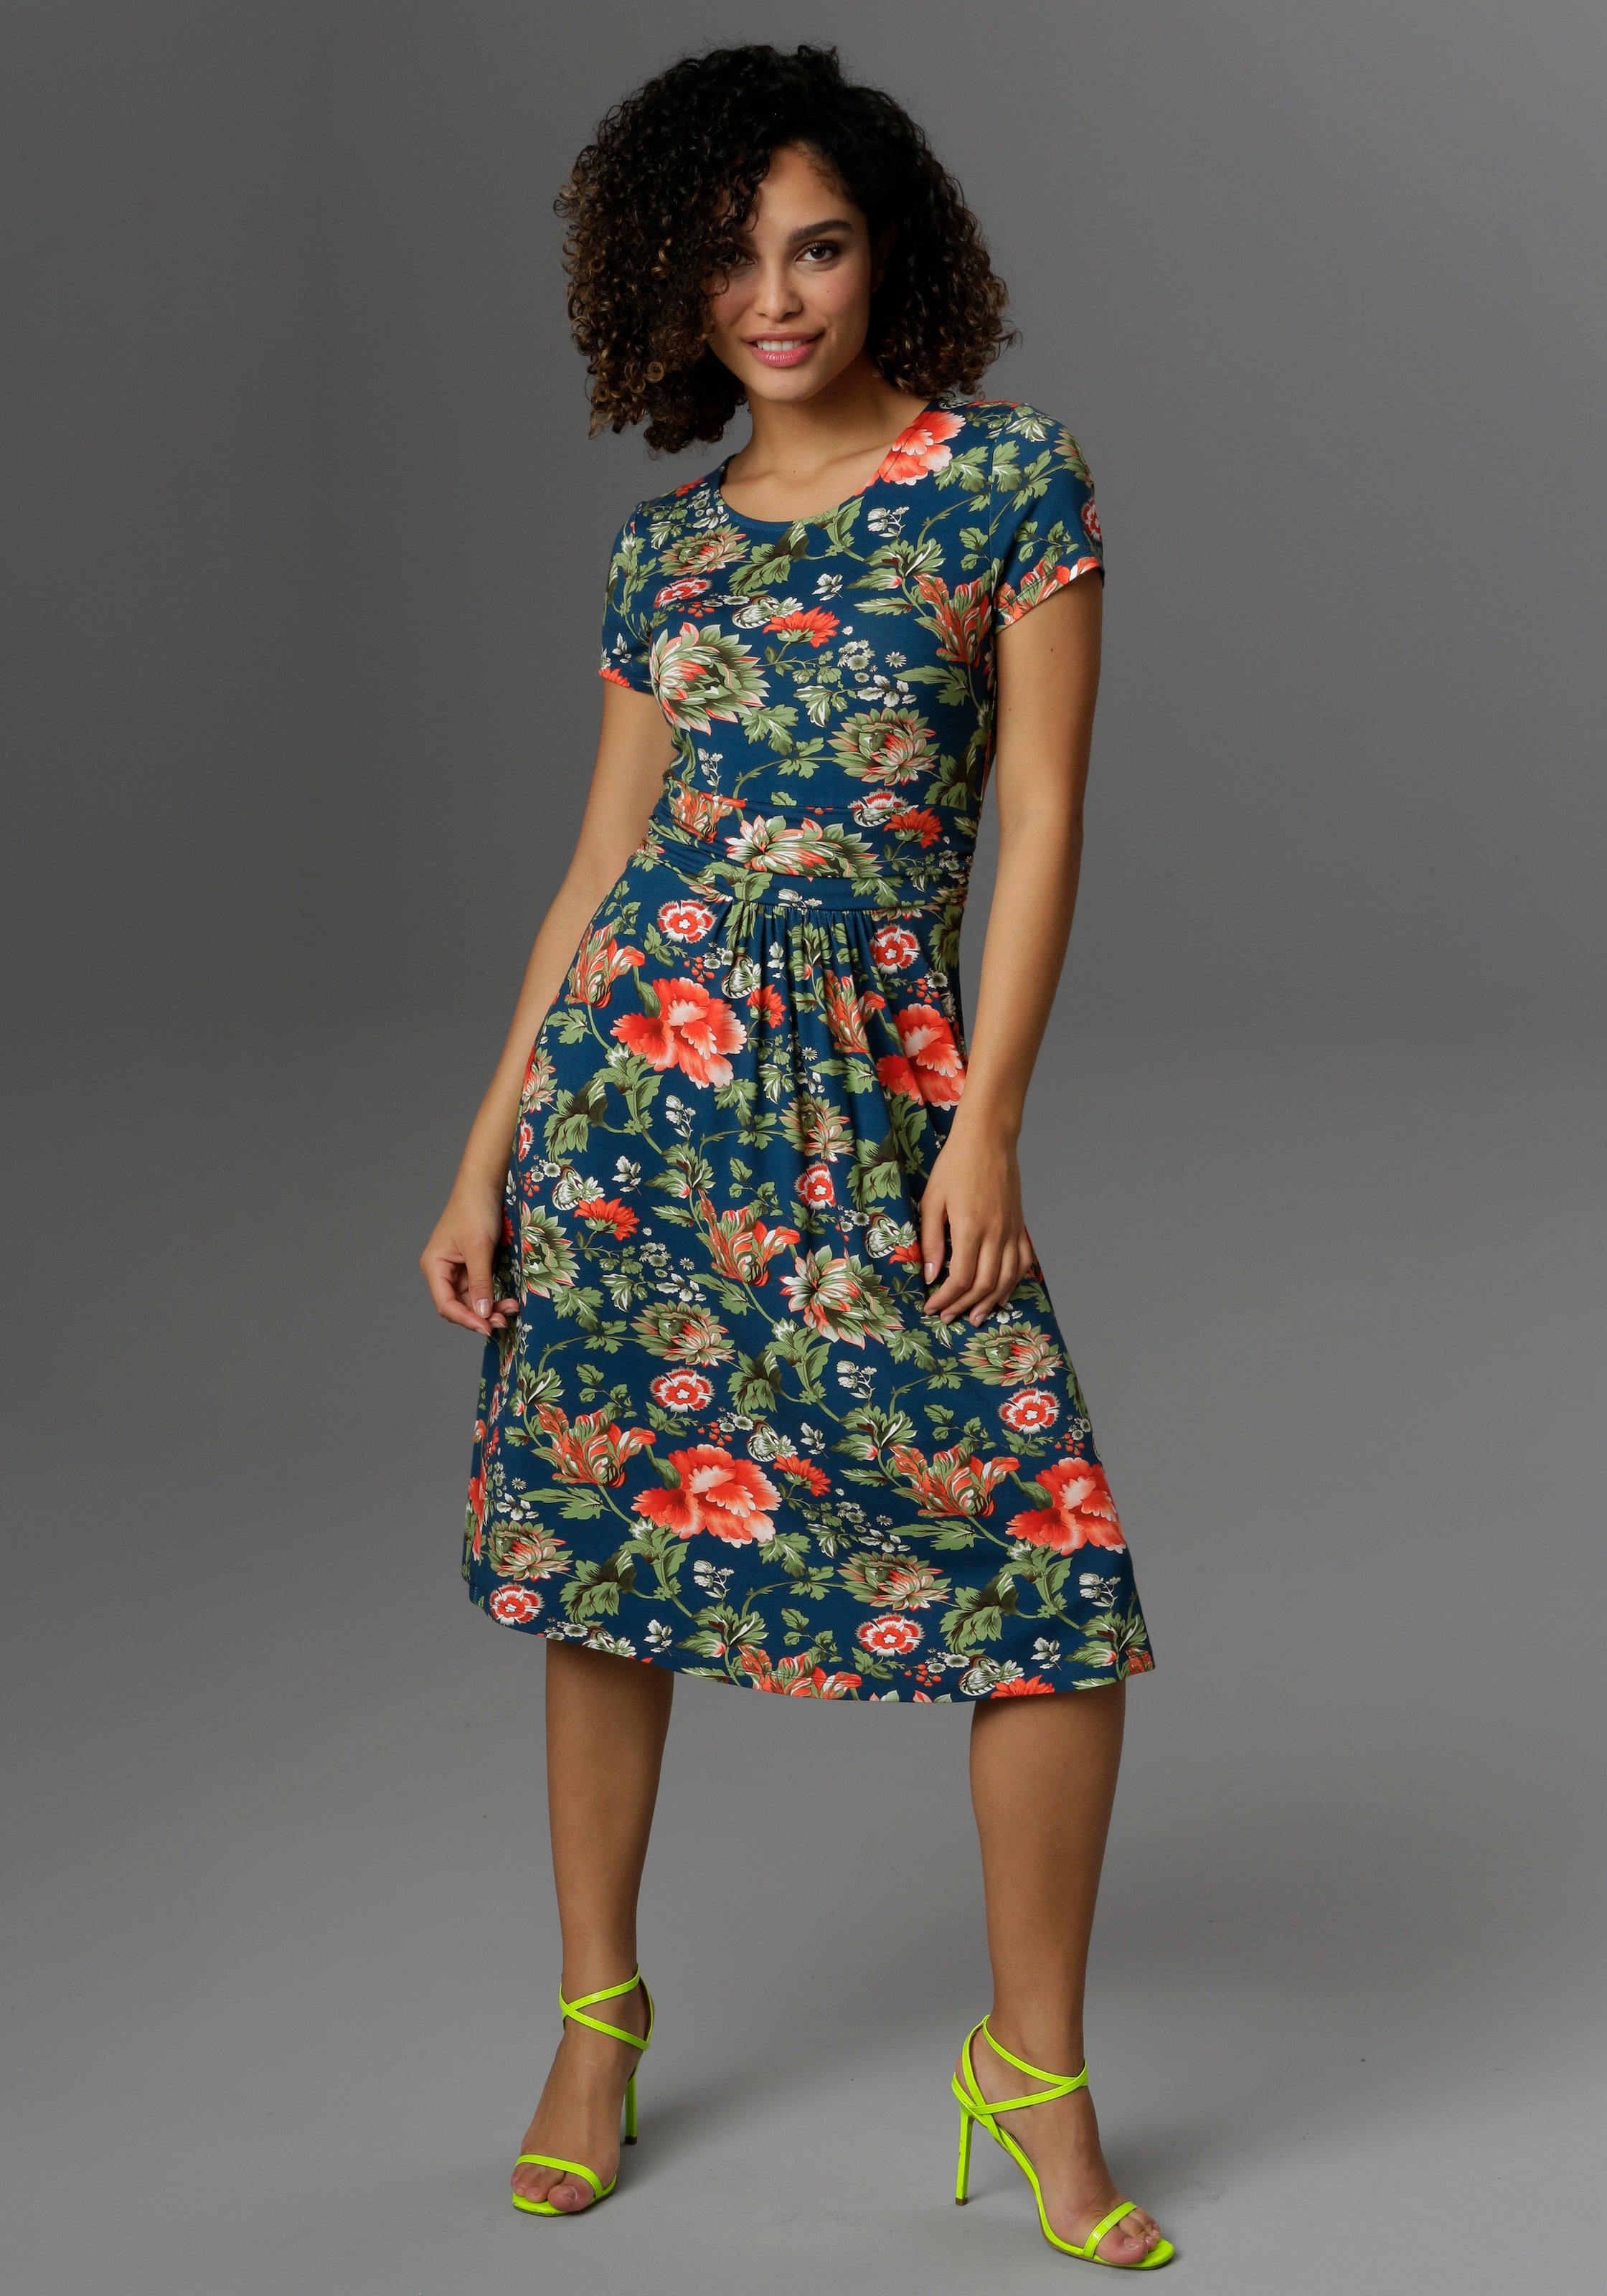 Shop im OTTO Online Aniston Blumendruck CASUAL mit Sommerkleid, farbenfrohem